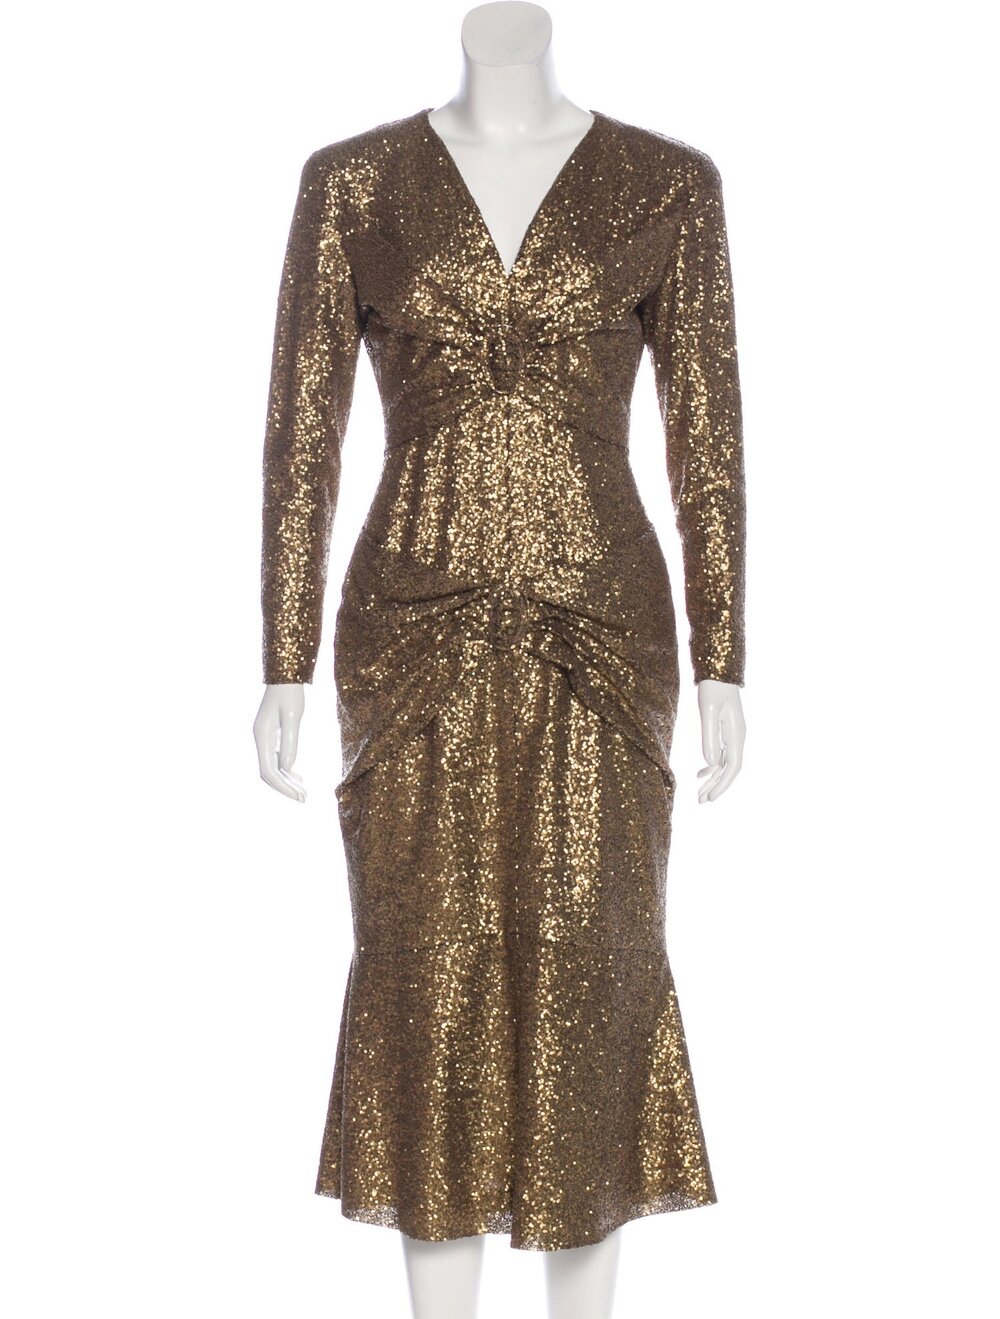 Chanel Sequin Dress - 46 For Sale on 1stDibs  black sequins mini dress, chanel  sequin mini dress, chanel beige dress